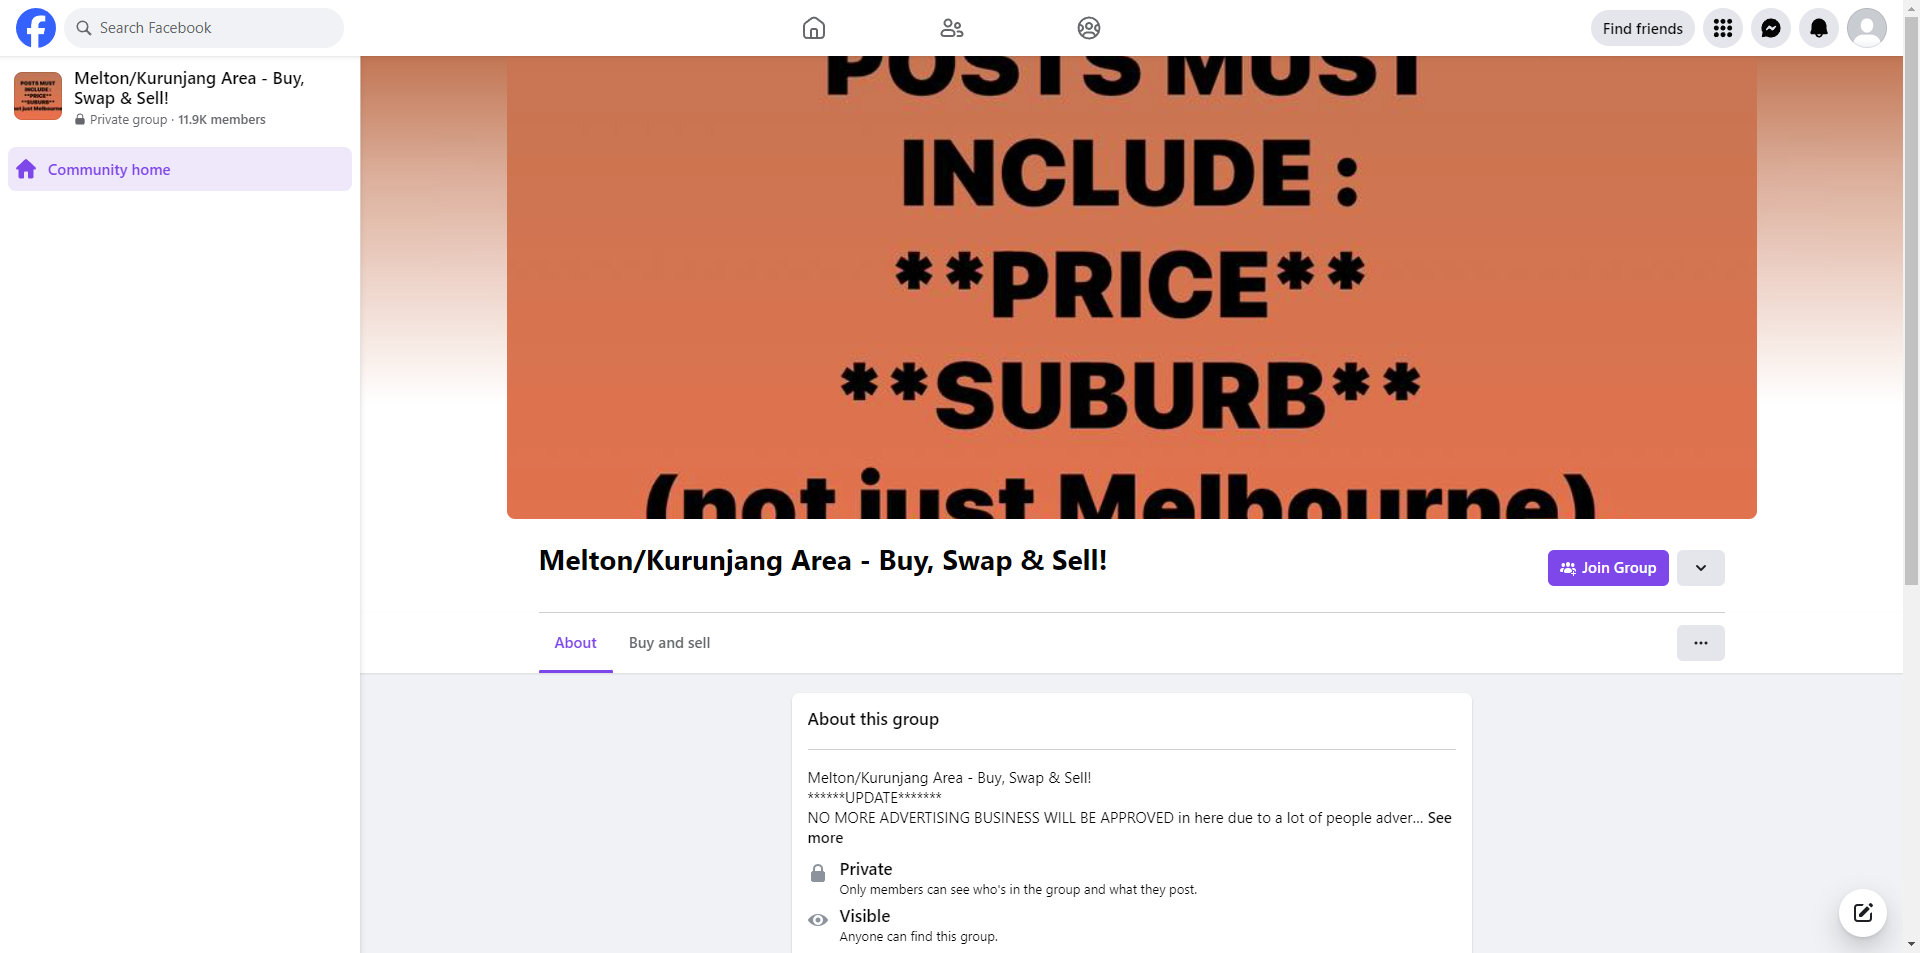 Melton/Kurunjang Area - Buy, Swap & Sell